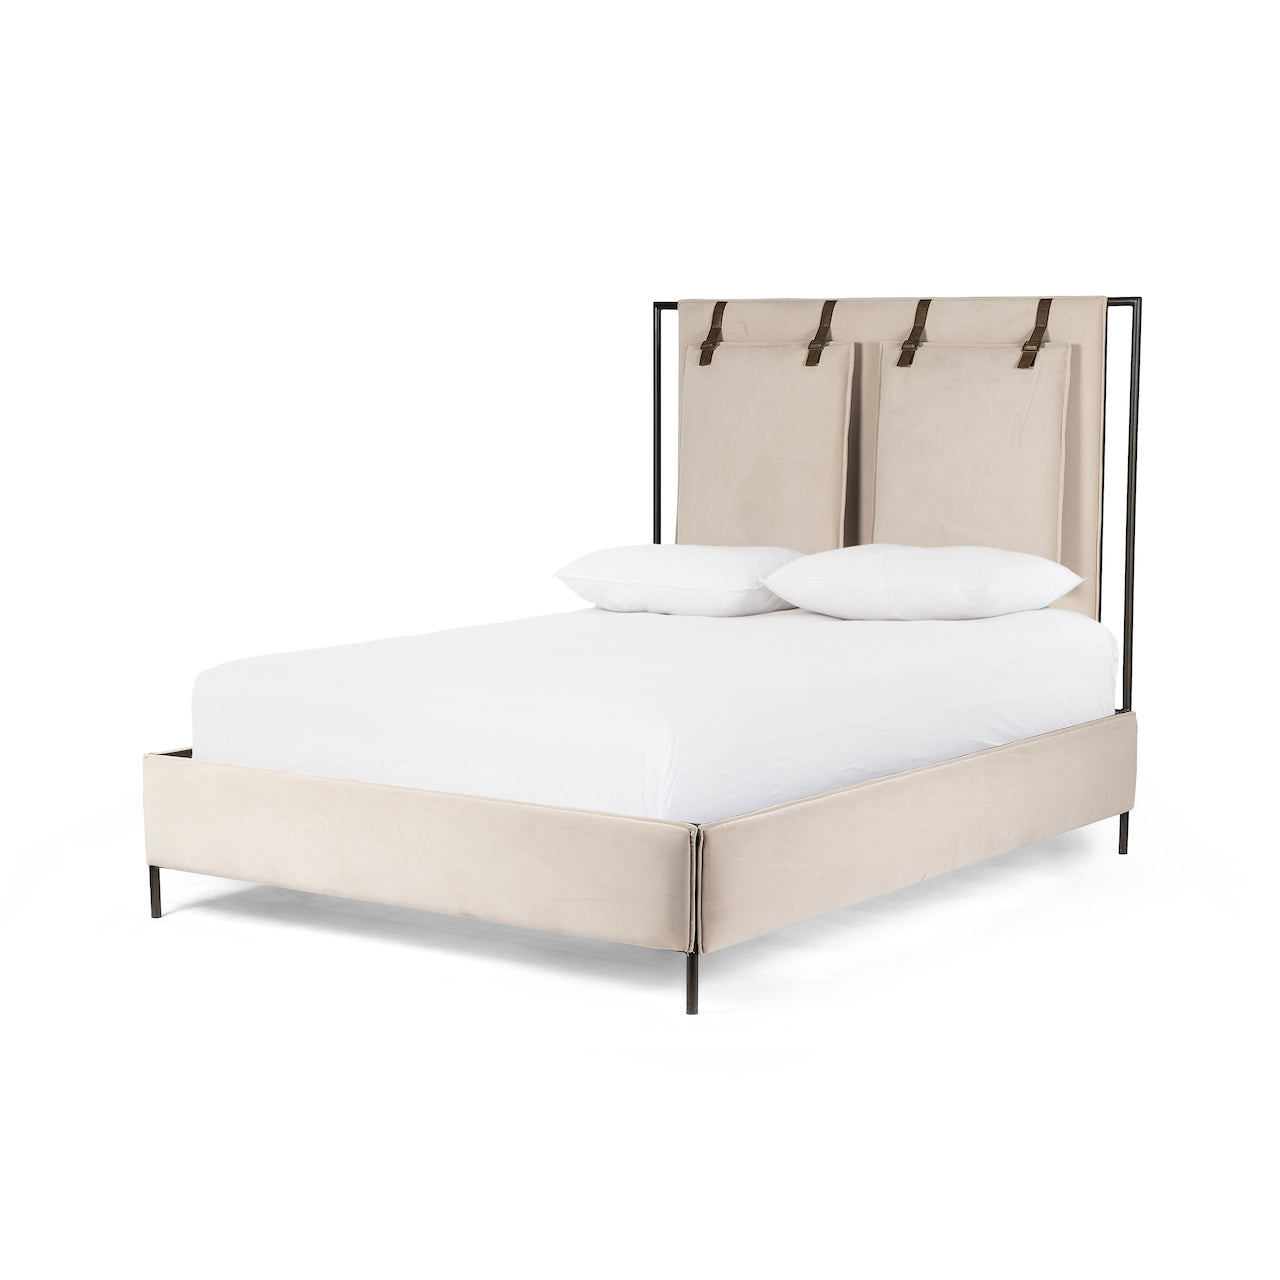 Leigh Upholstered Bed Modern Velvet Sand